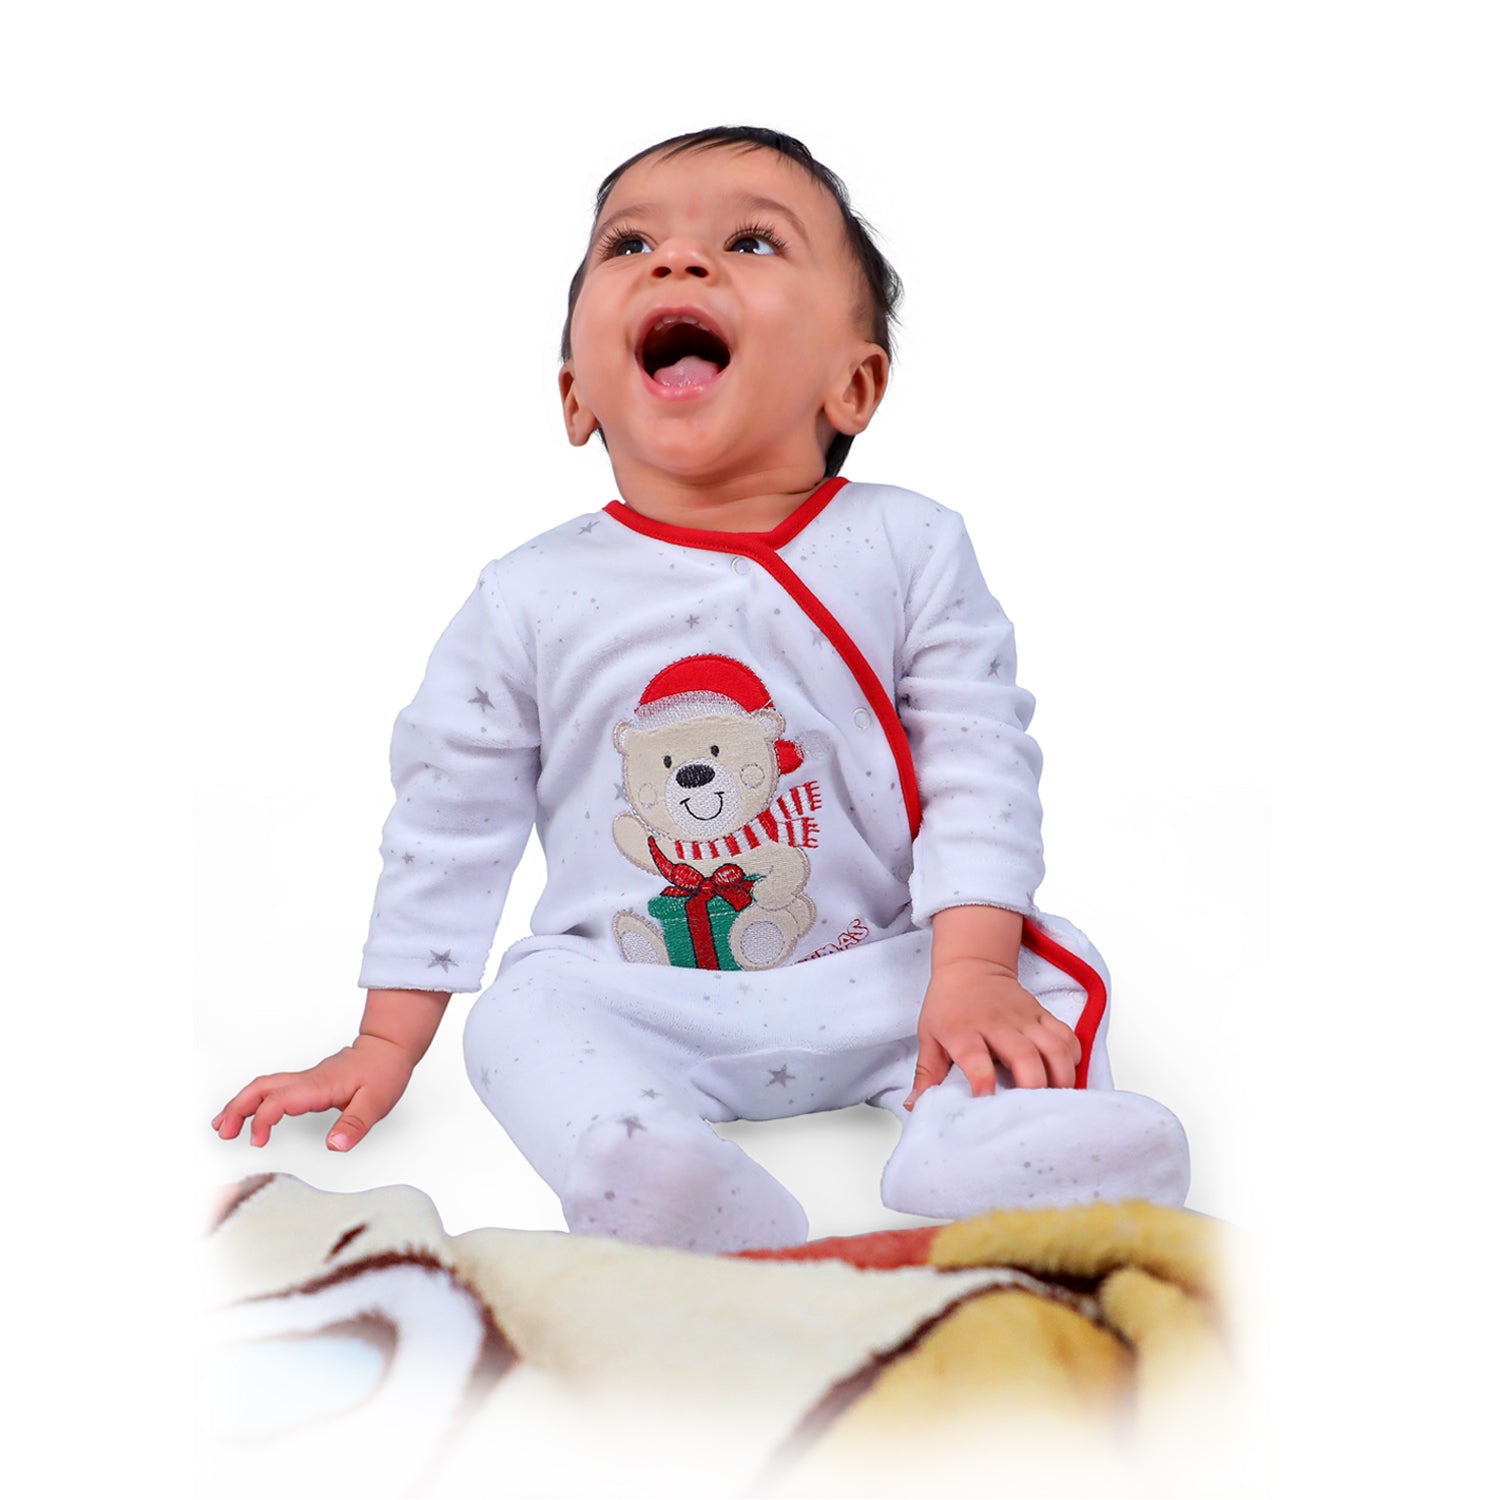 Santa's Favourite Infant Full Sleeves Snap Button Bodysuit Romper - White